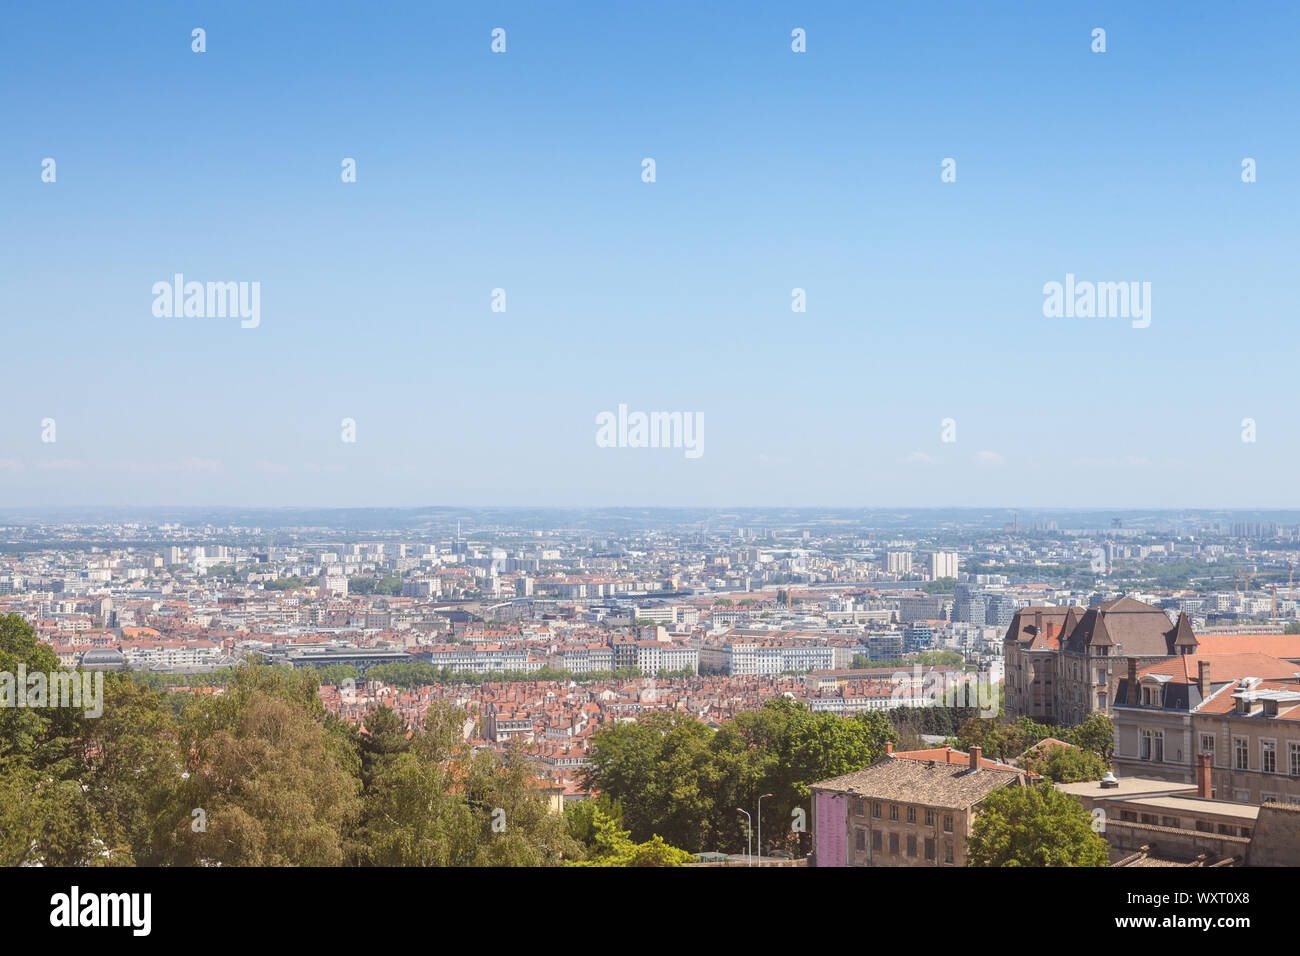 Antenna vista panoramiche di Lione con il centro storico della città visibile in background e del fiume Saone in primo piano, con le strette strade di Foto Stock